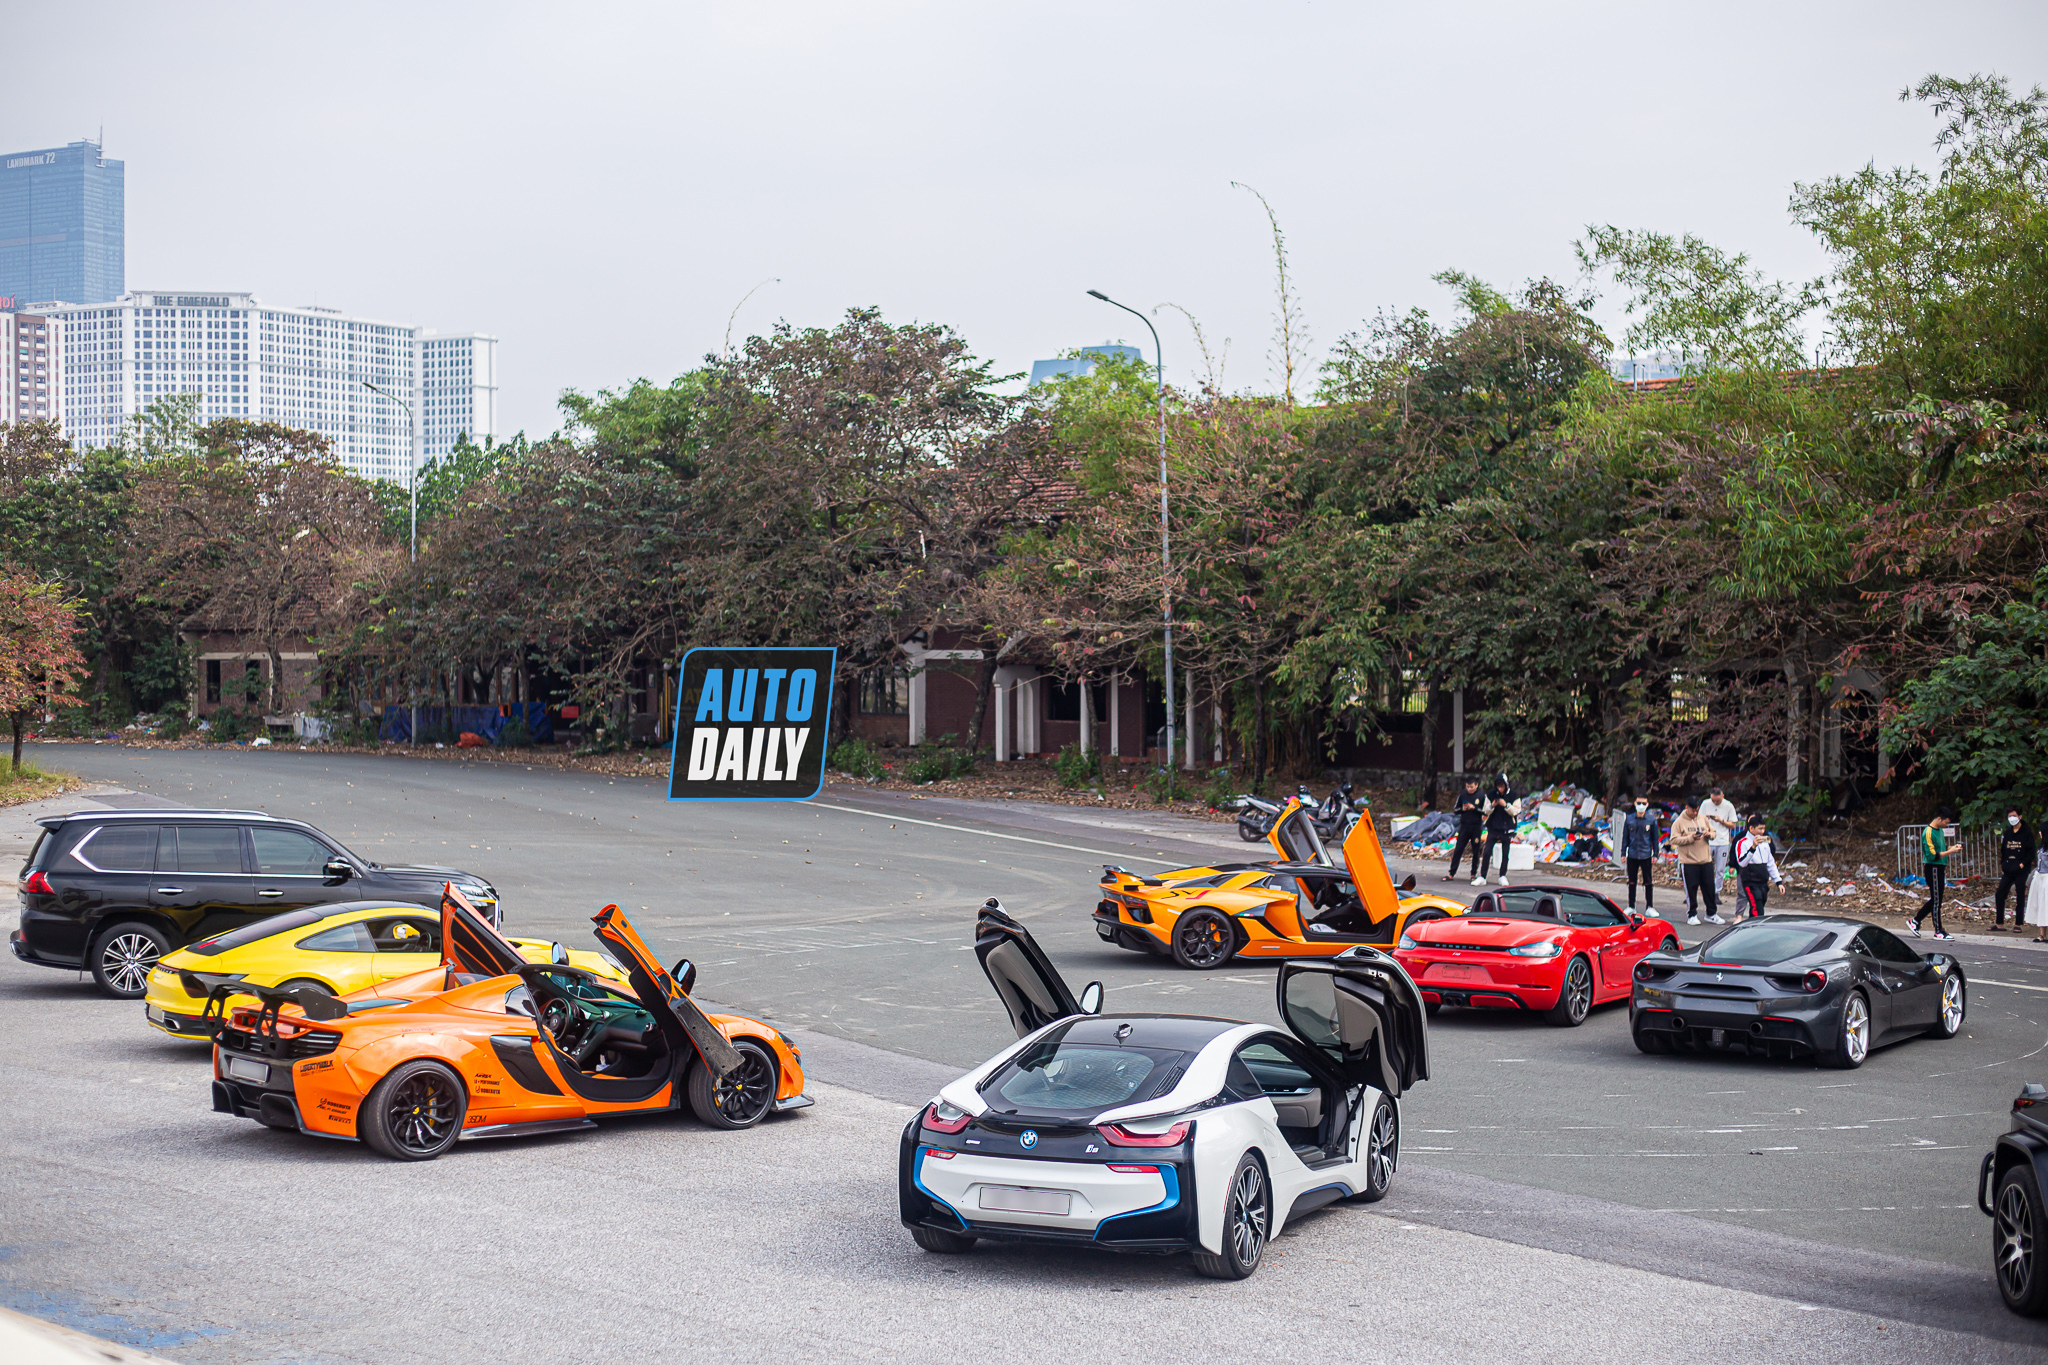 Ngắm dàn siêu xe, xe sang trăm tỷ náo loạn đường phố Hà Nội dịp cuối tuần dan-sieu-xe-tram-ty-ha-noi-autodaily-2.JPG